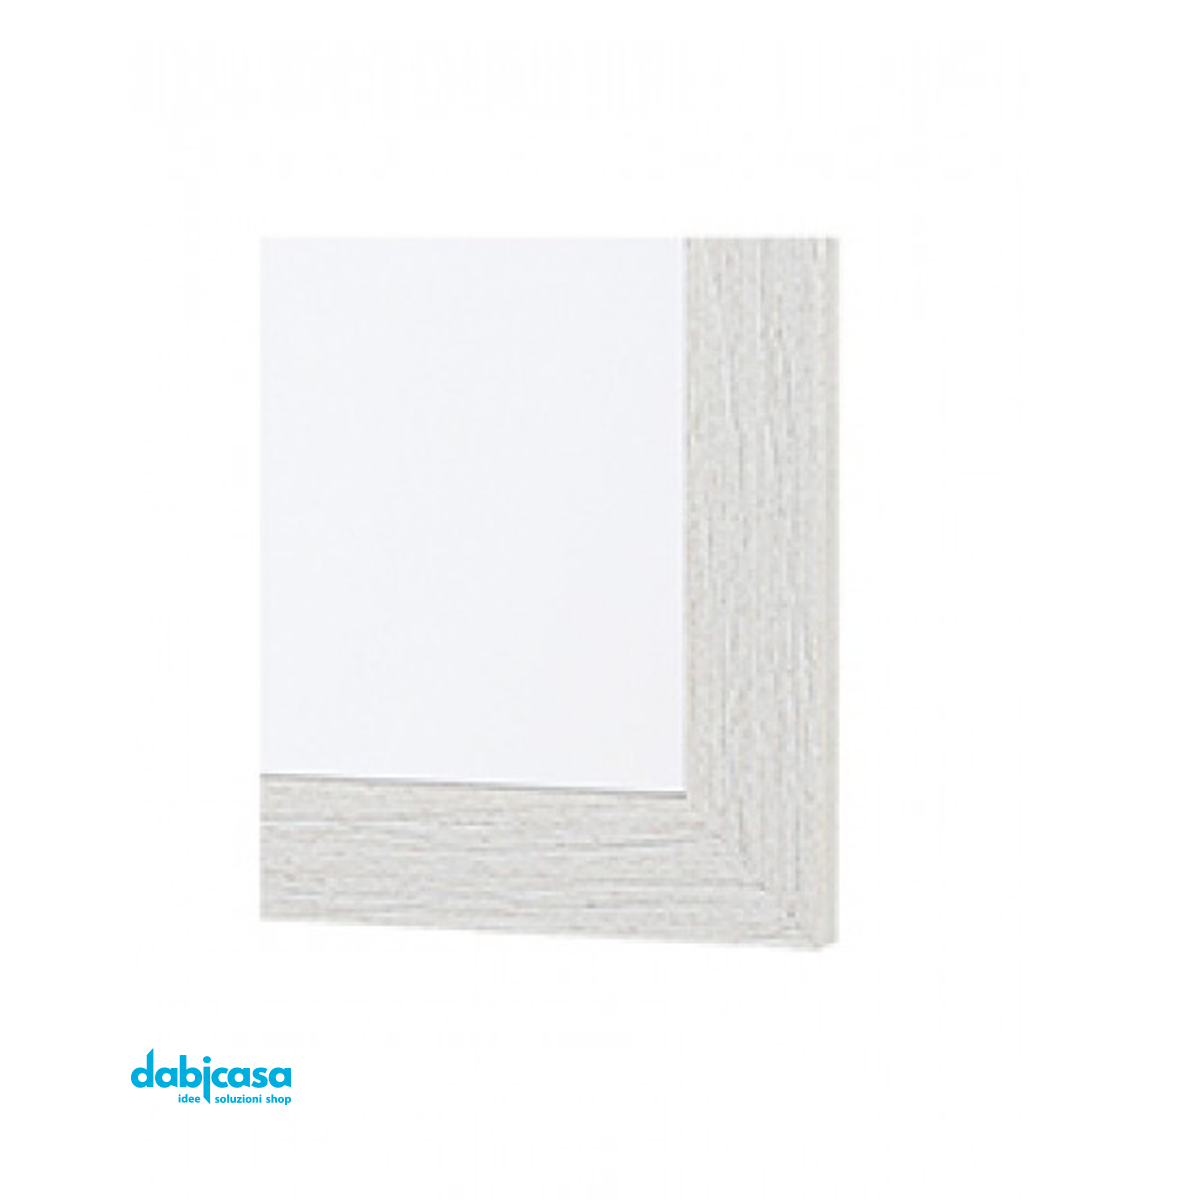 Specchio "Linea Wood" Con Cornice Colore Bianco Effetto Legno 50x60cm freeshipping - Dabicasa